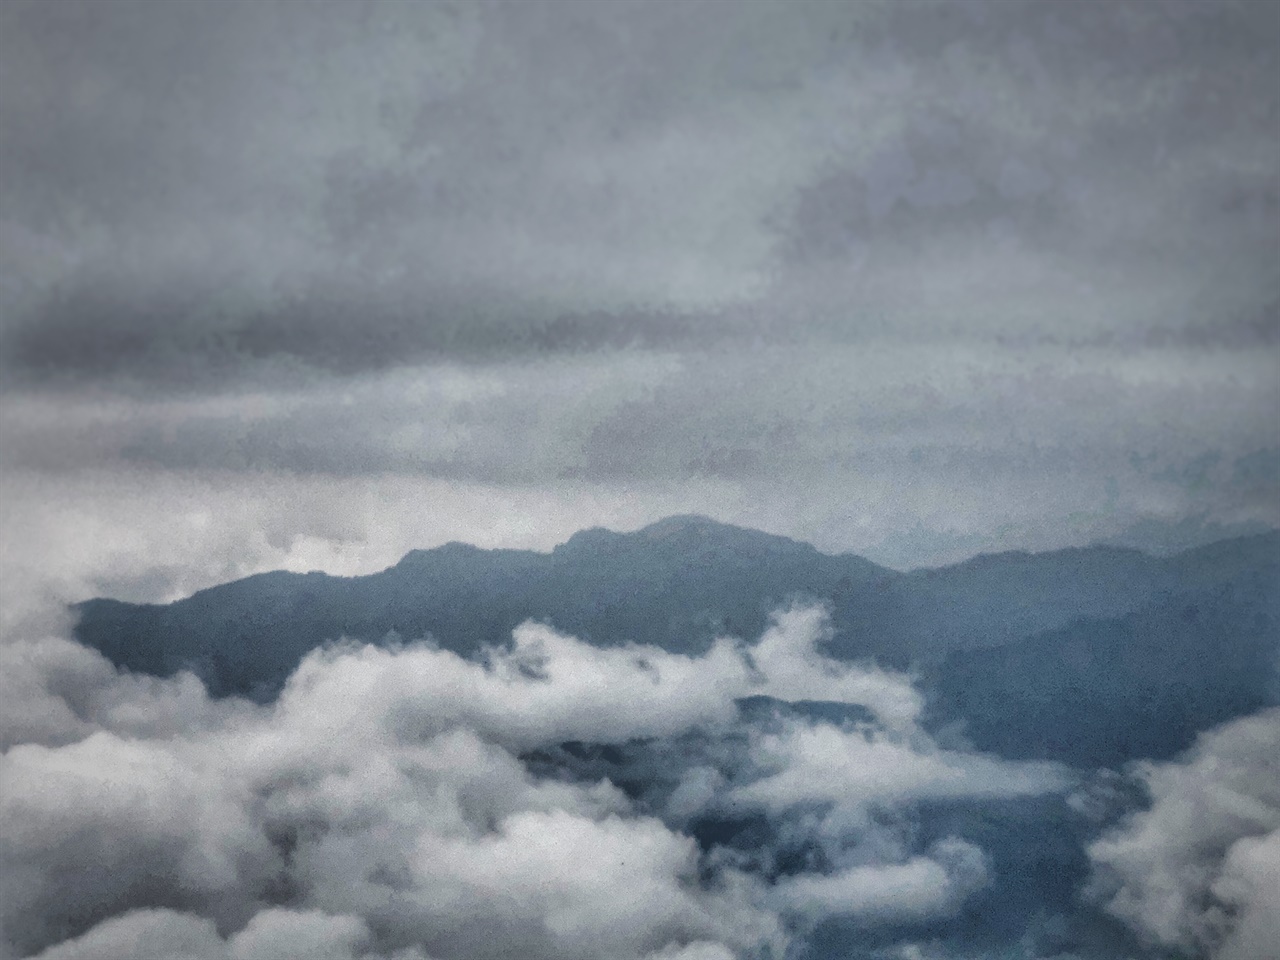 멀리 구름 너머 3,952미터 대만 최고봉 옥산이 보인다. 무탈한 여행과 세계 평화를 기원한다.